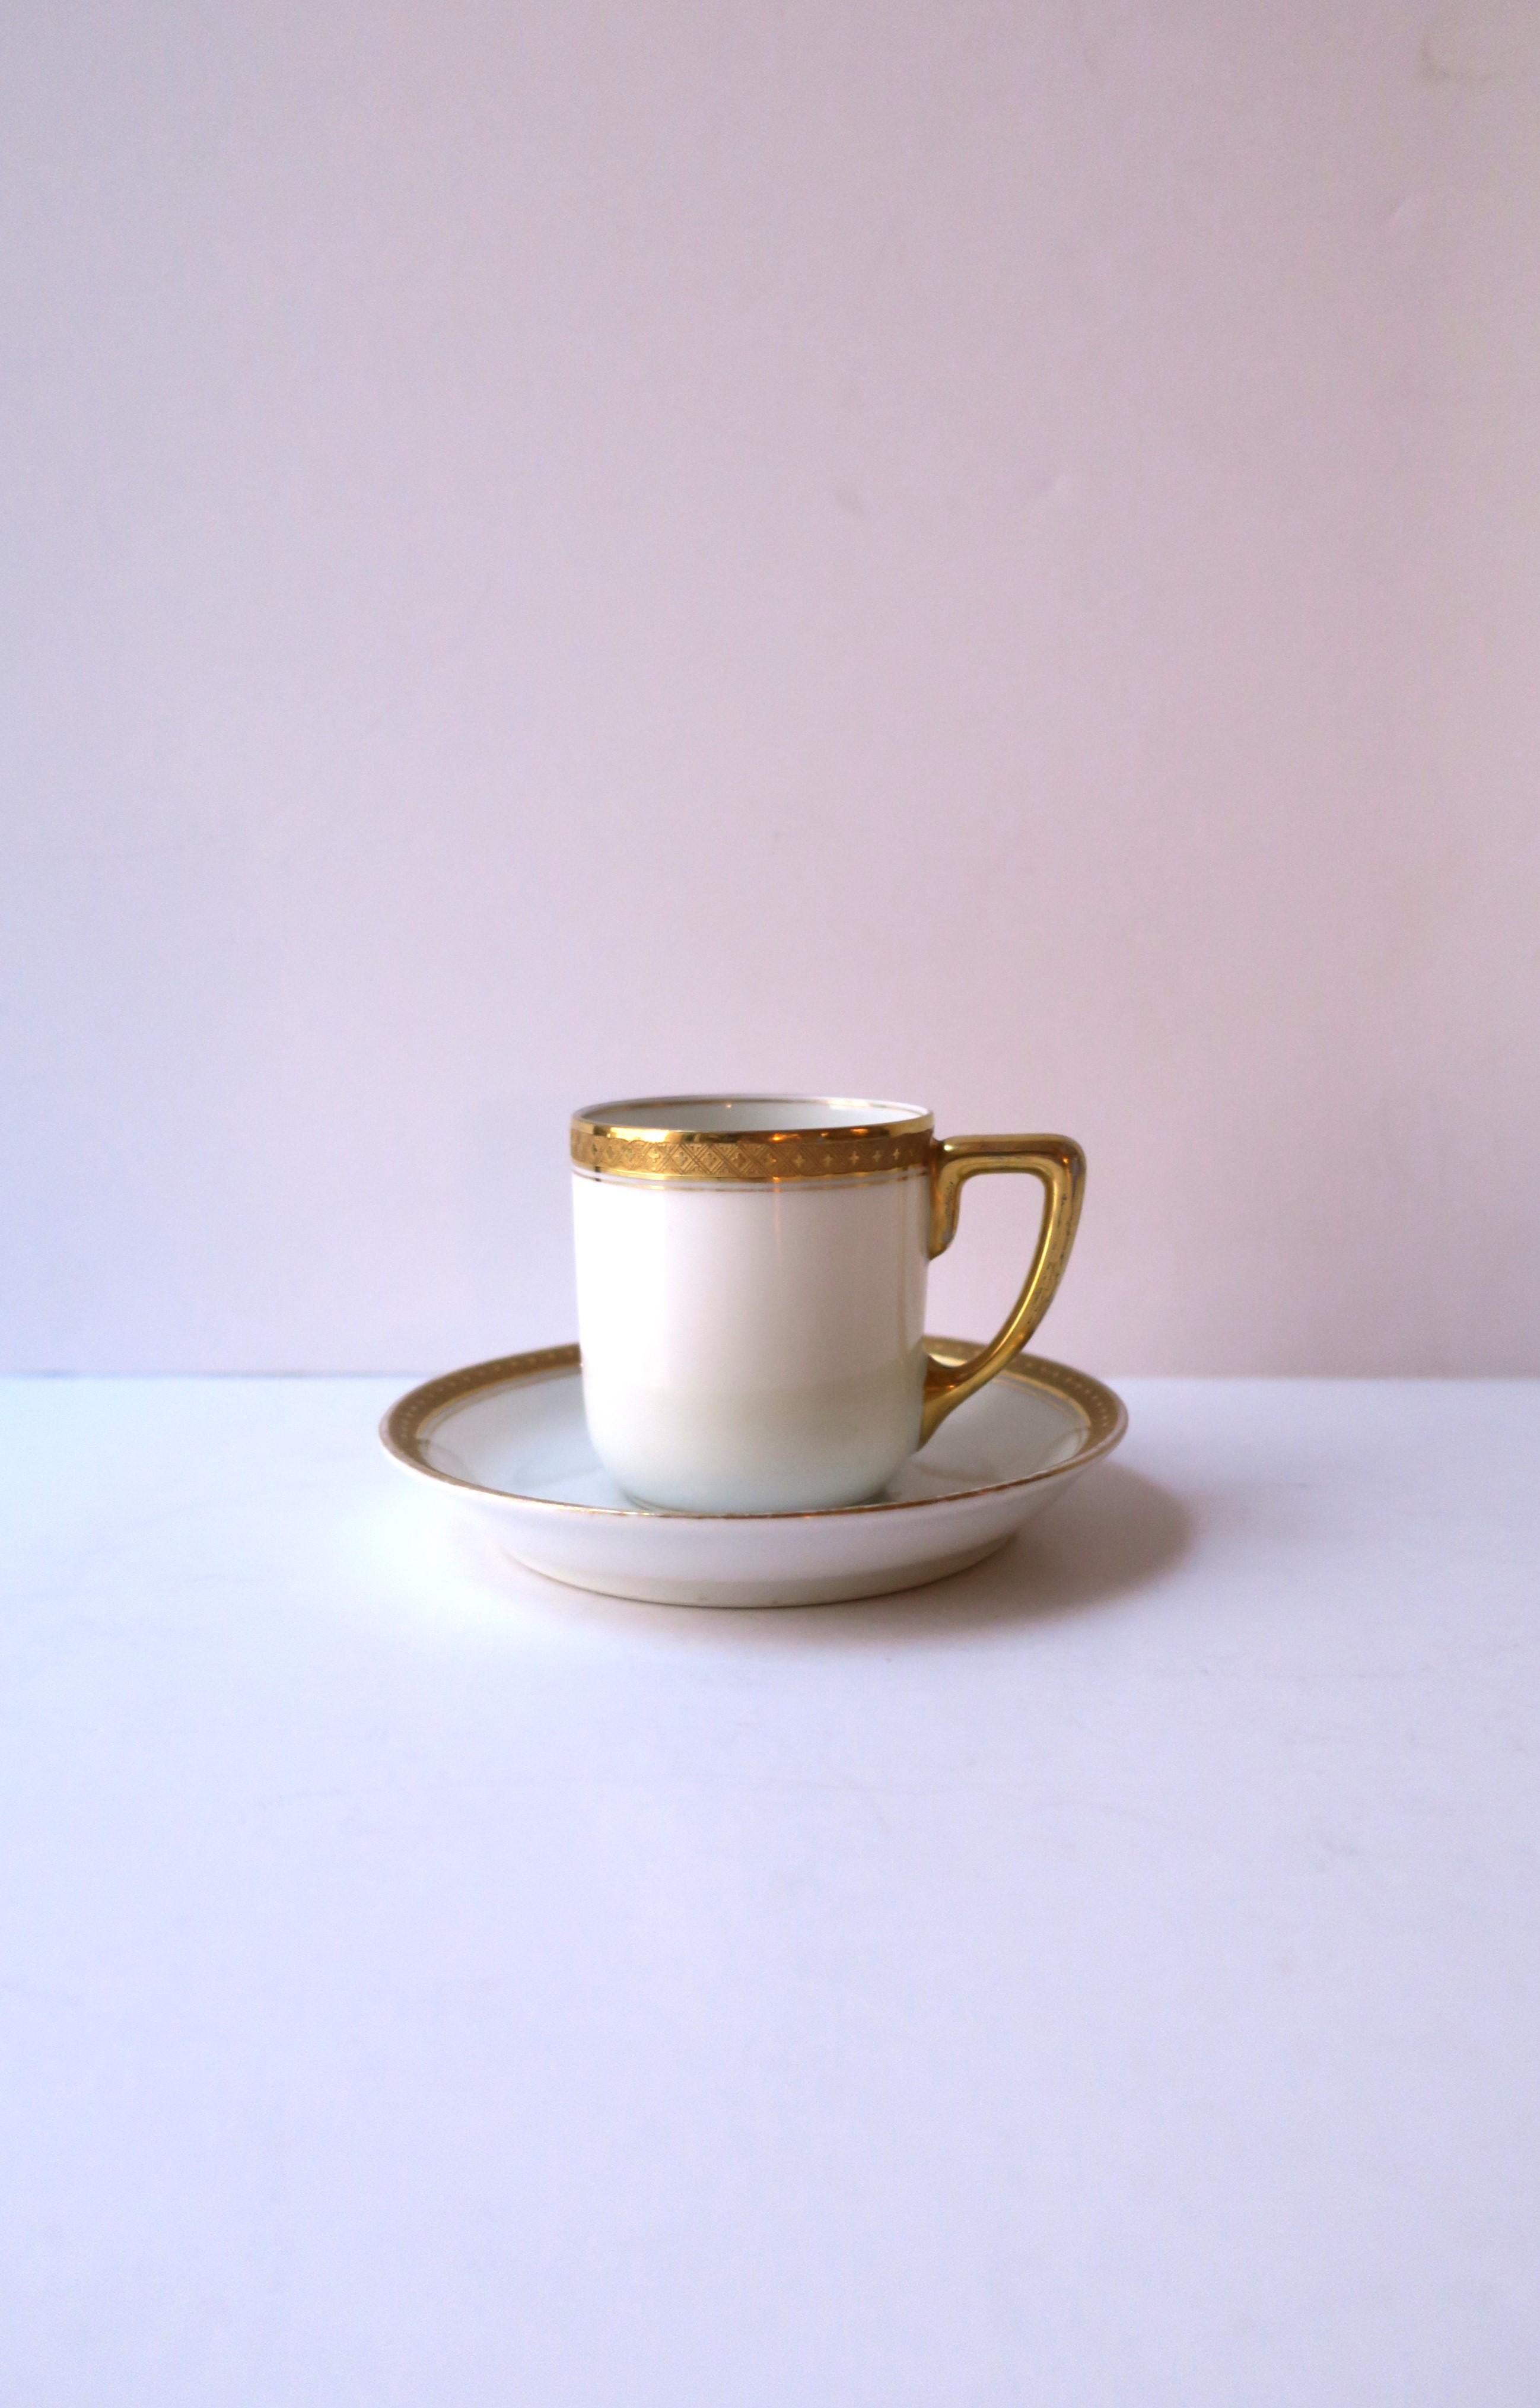 Eine schöne deutsche weißes Porzellan und Gold vergoldet Kaffee Espresso oder Tee Untertasse und Untertasse von Rosenthal, ca. frühen 20. Jahrhundert, Deutschland. Diese Tasse mit Untertasse aus weißem Porzellan hat ein leicht erhabenes, vergoldetes